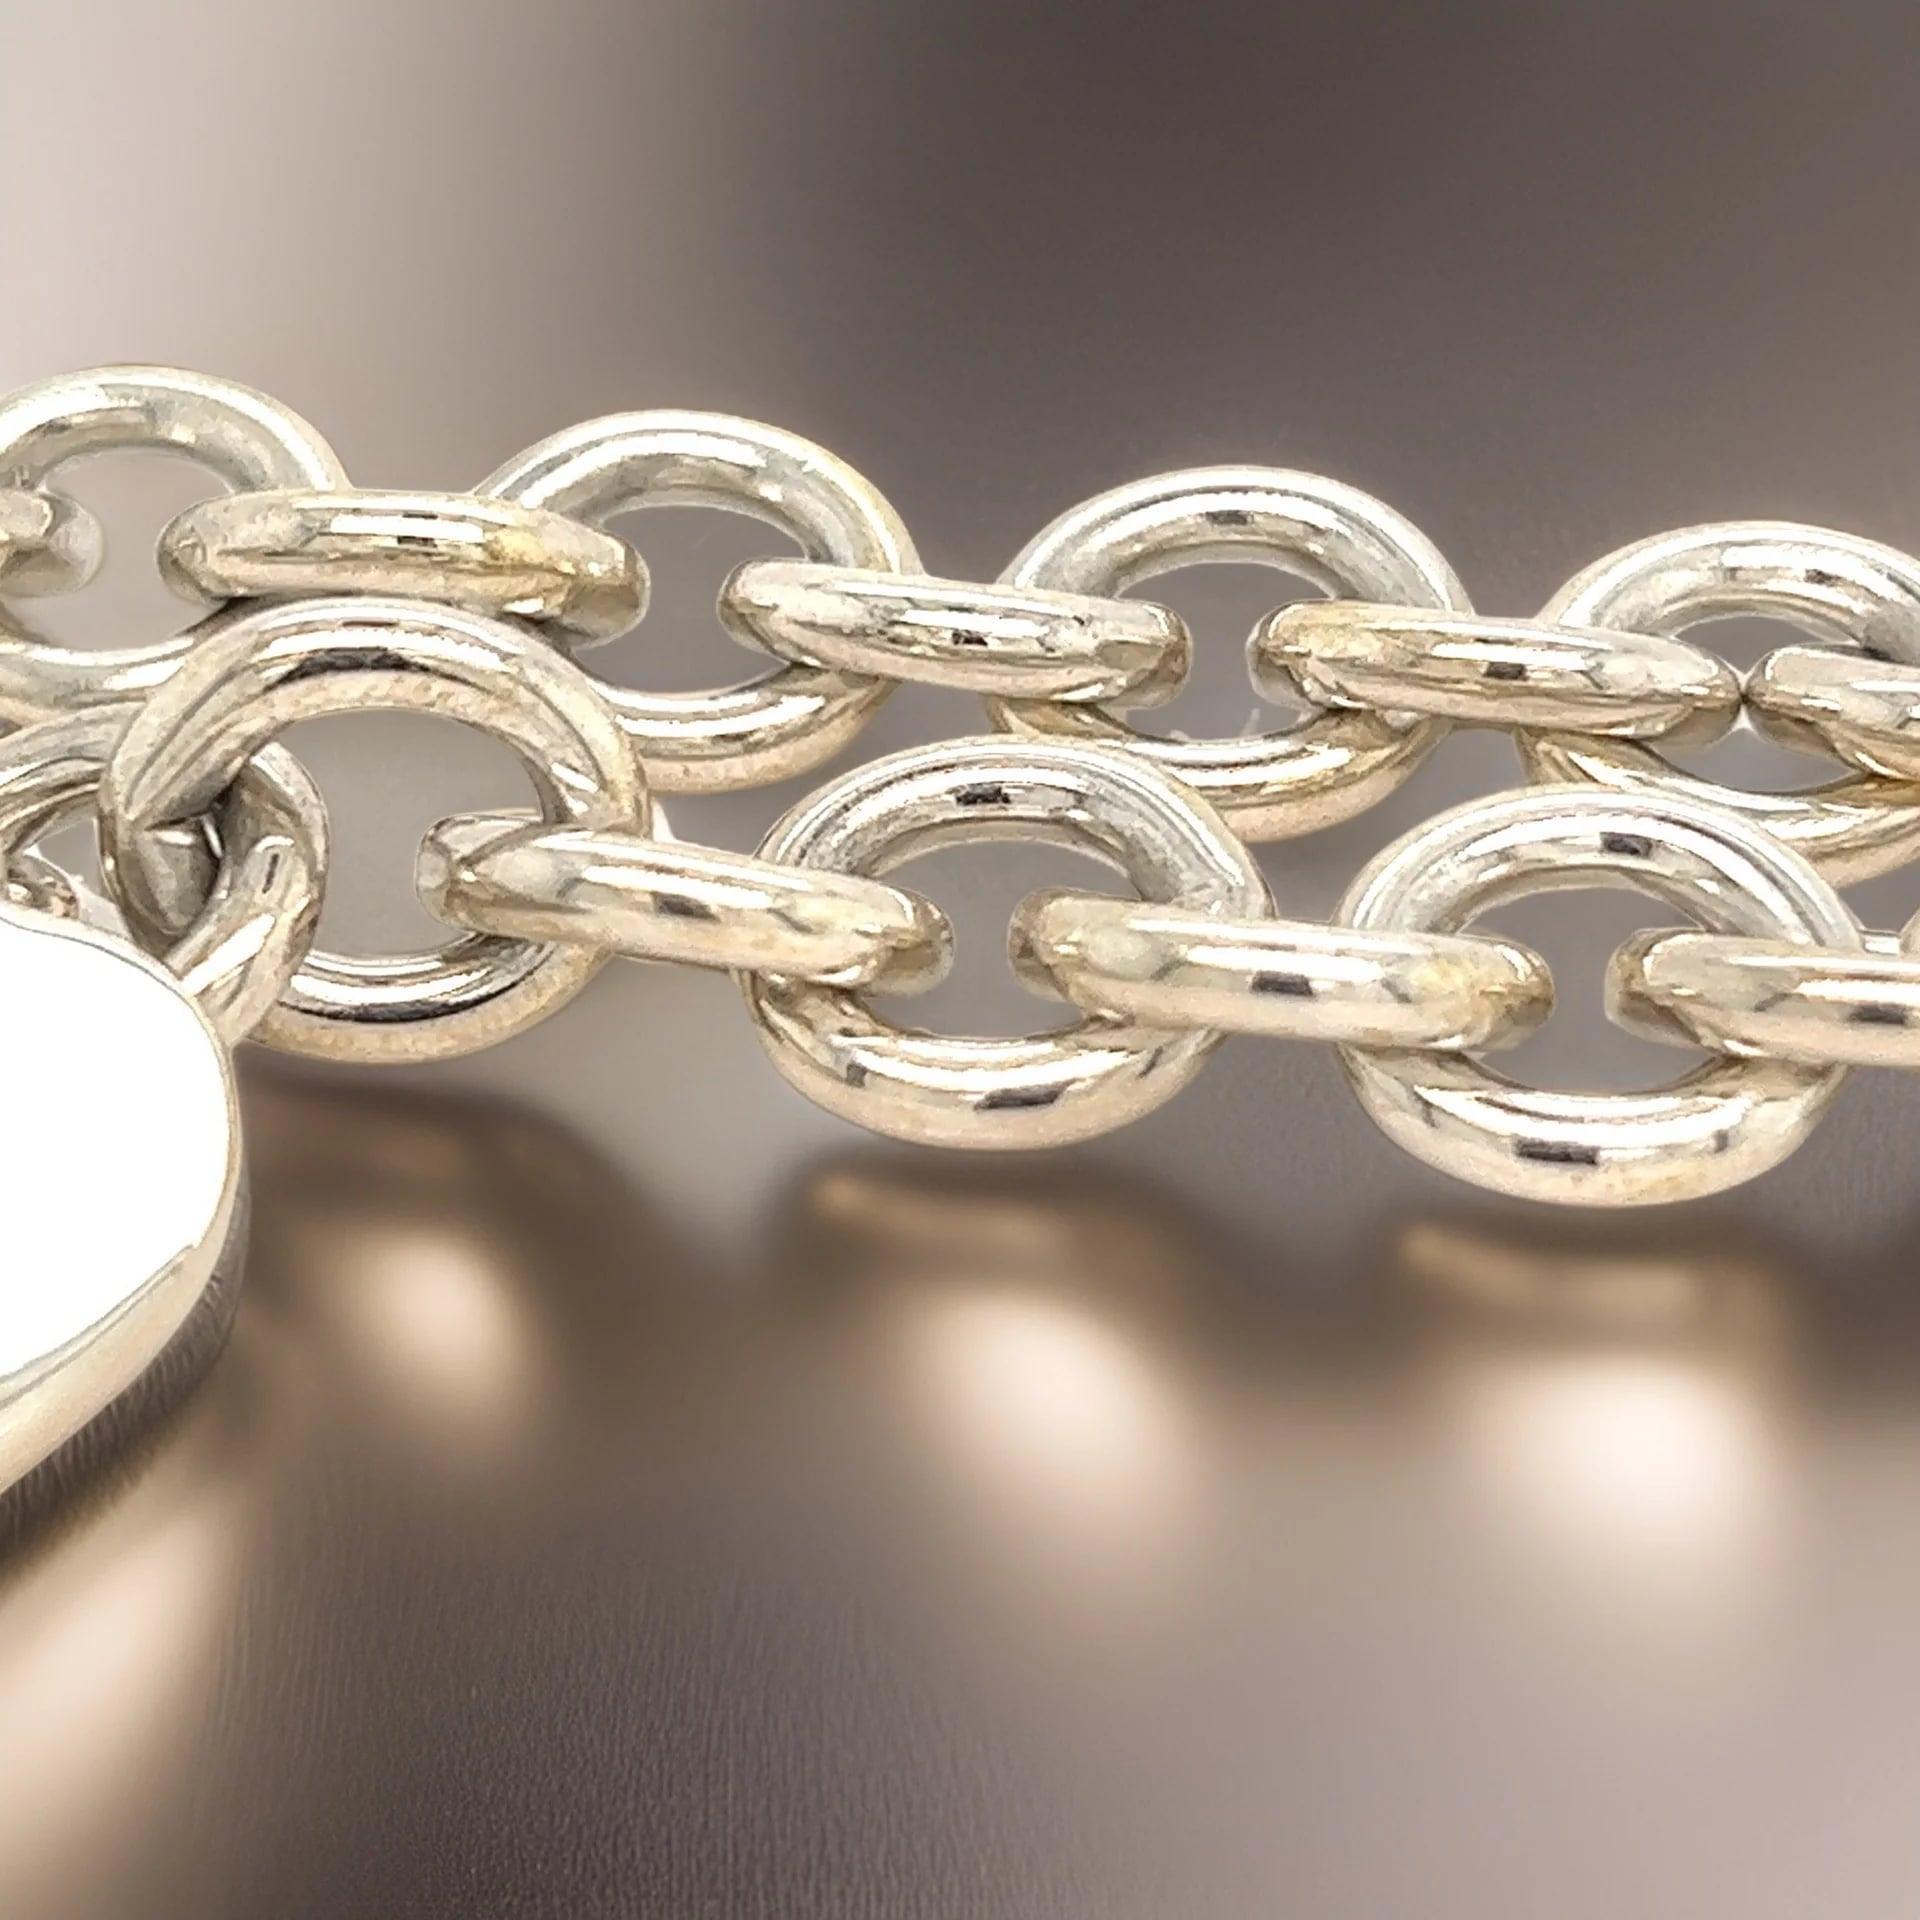 Tiffany & Co Estate Heart Bracelet 7.5